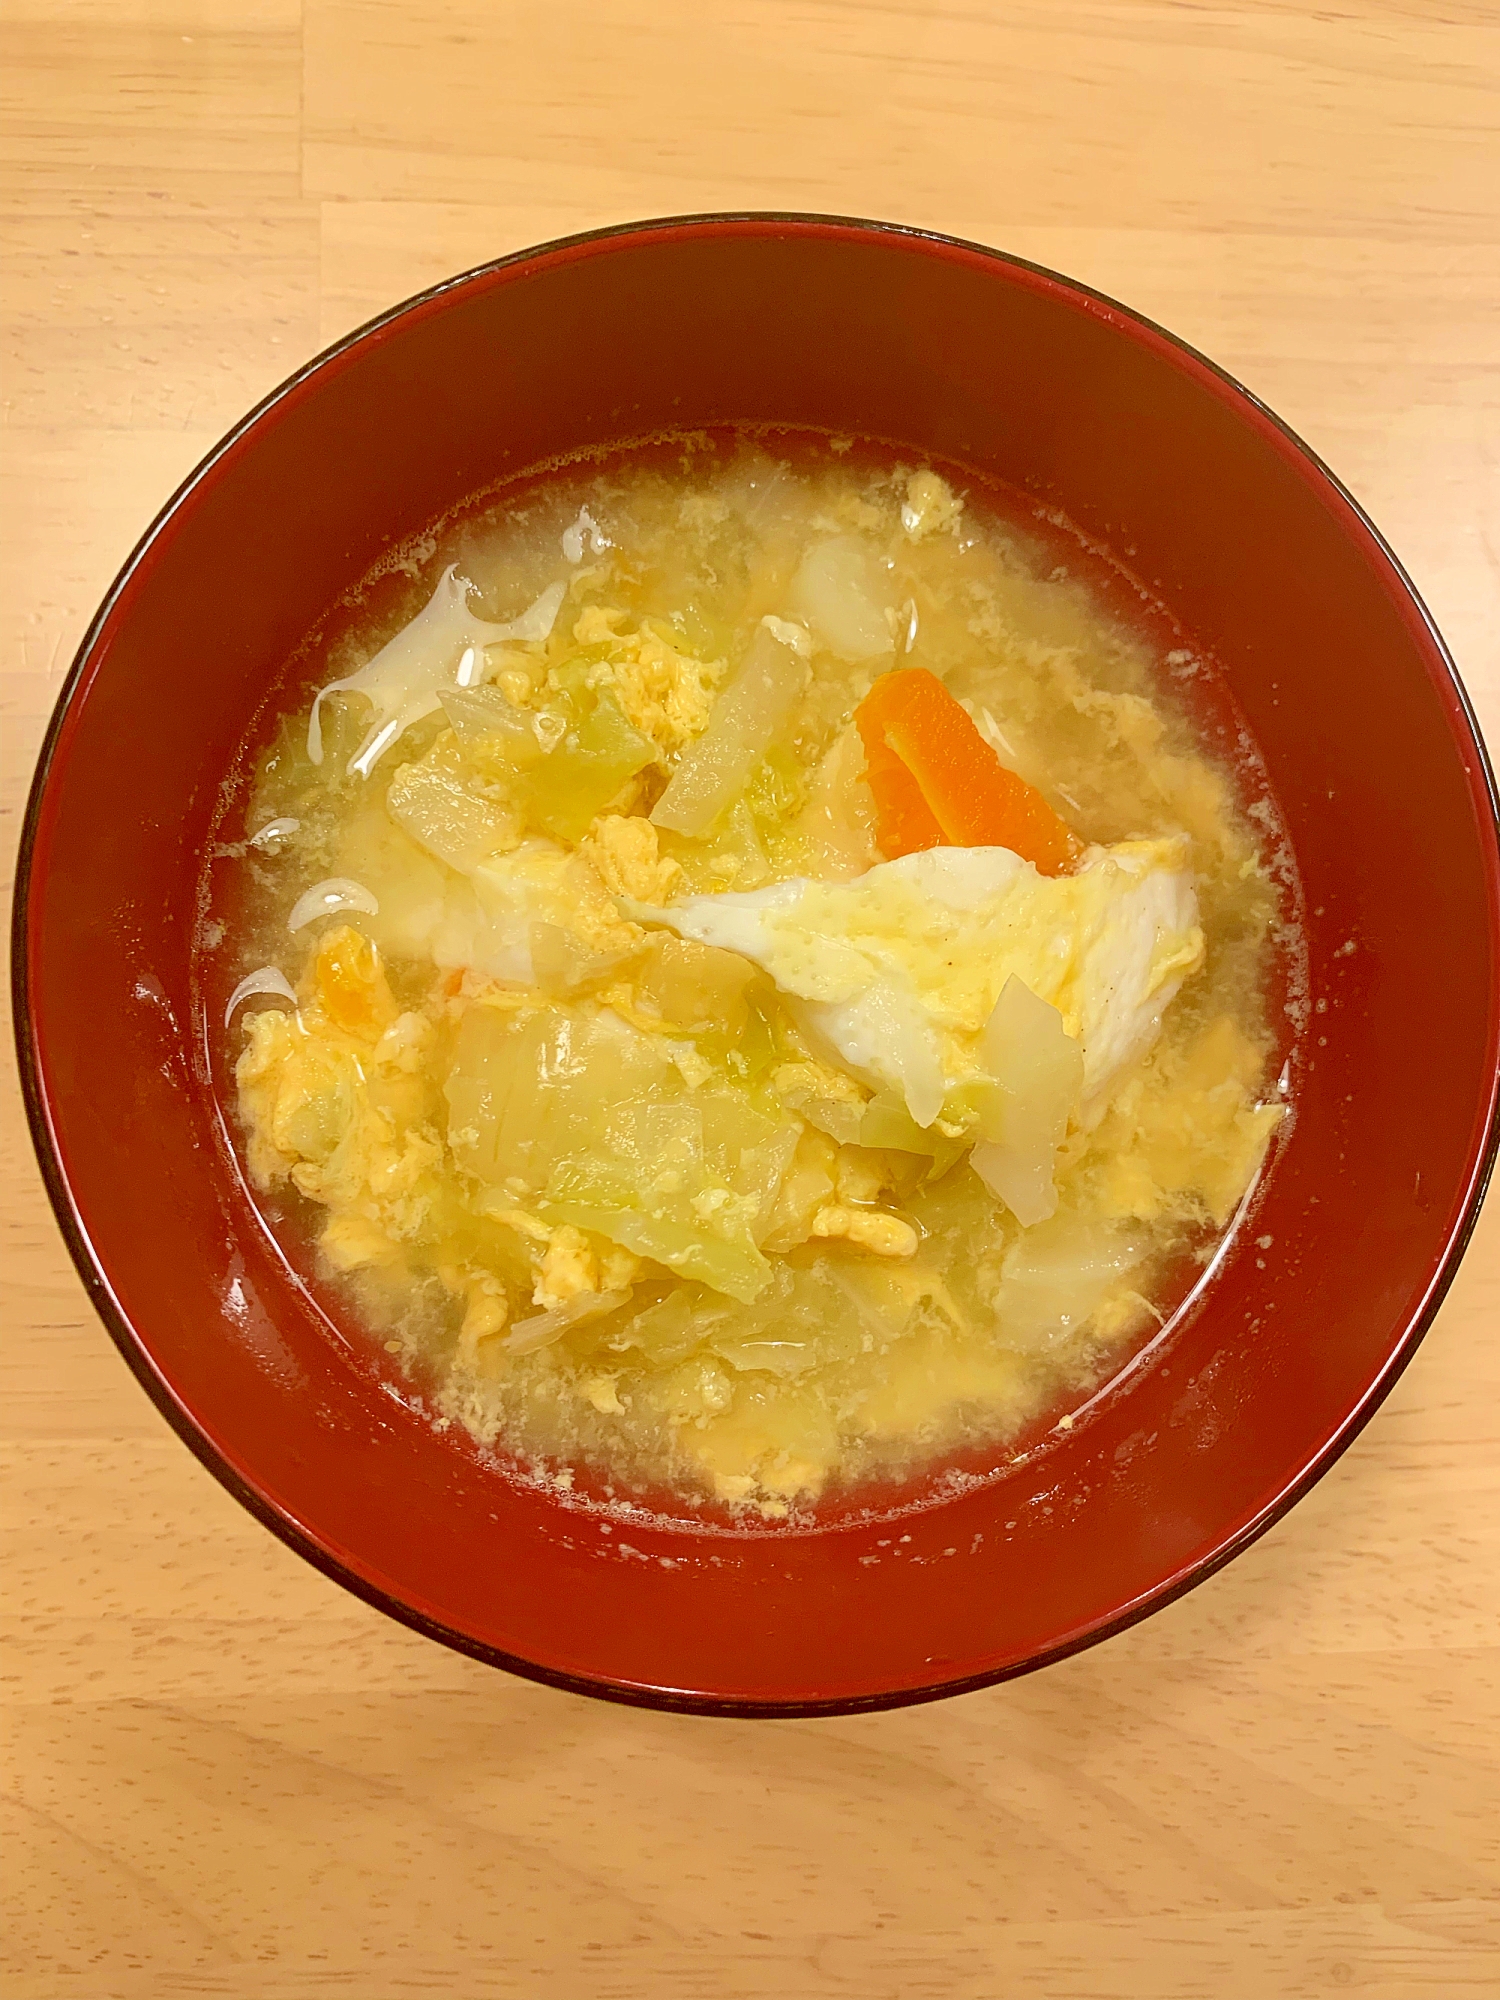 キャベツと卵のスープ